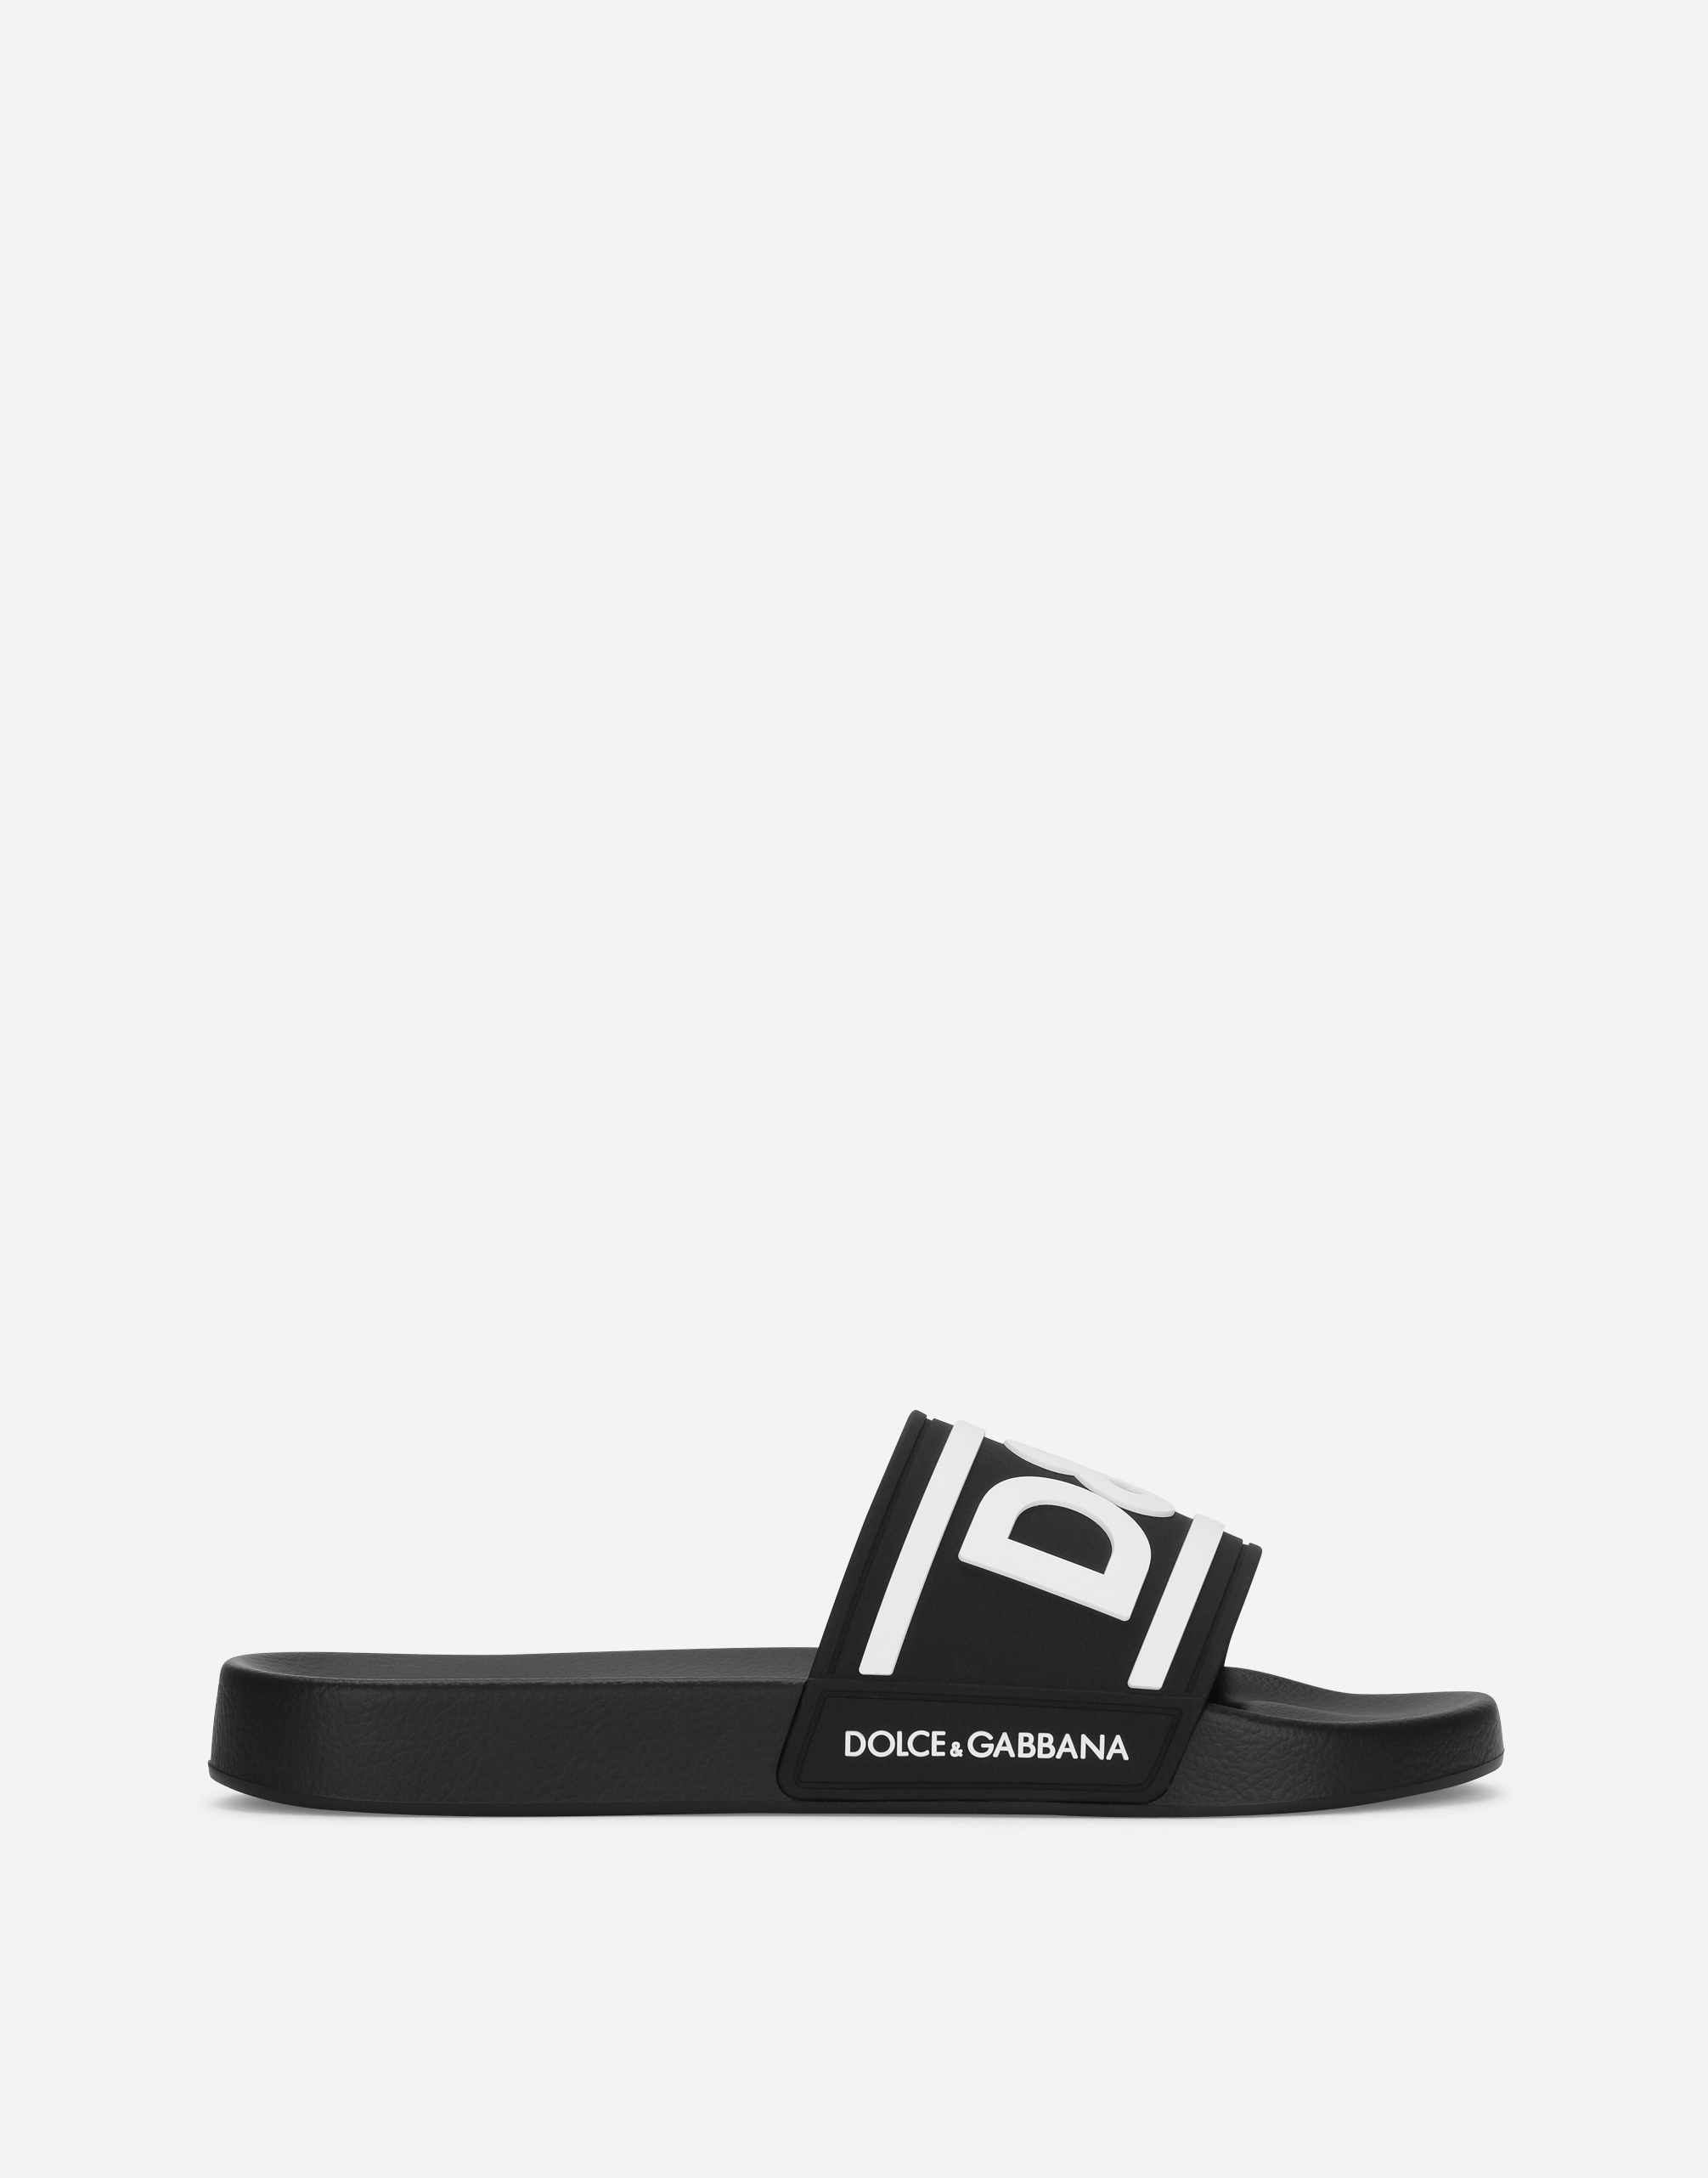 Dolce & Gabbana Rubber Beachwear Sliders With Dg Logo In Black/white